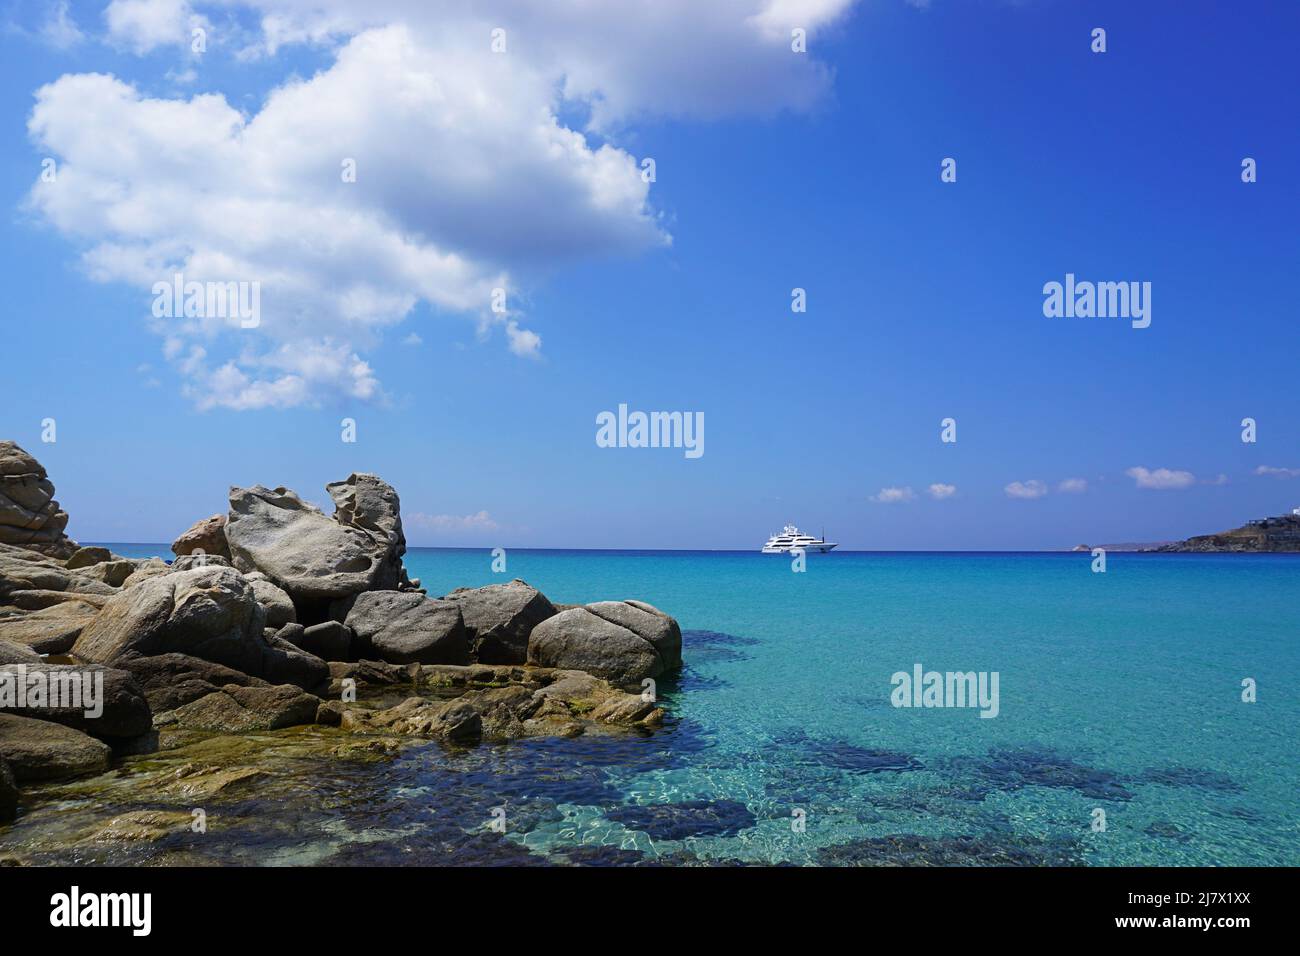 Una cartolina blu dall'isola di Mykonos: Il tranquillo Mar Mediterraneo a Platis Gialos, con yacht, cielo blu e nuvole bianche Foto Stock